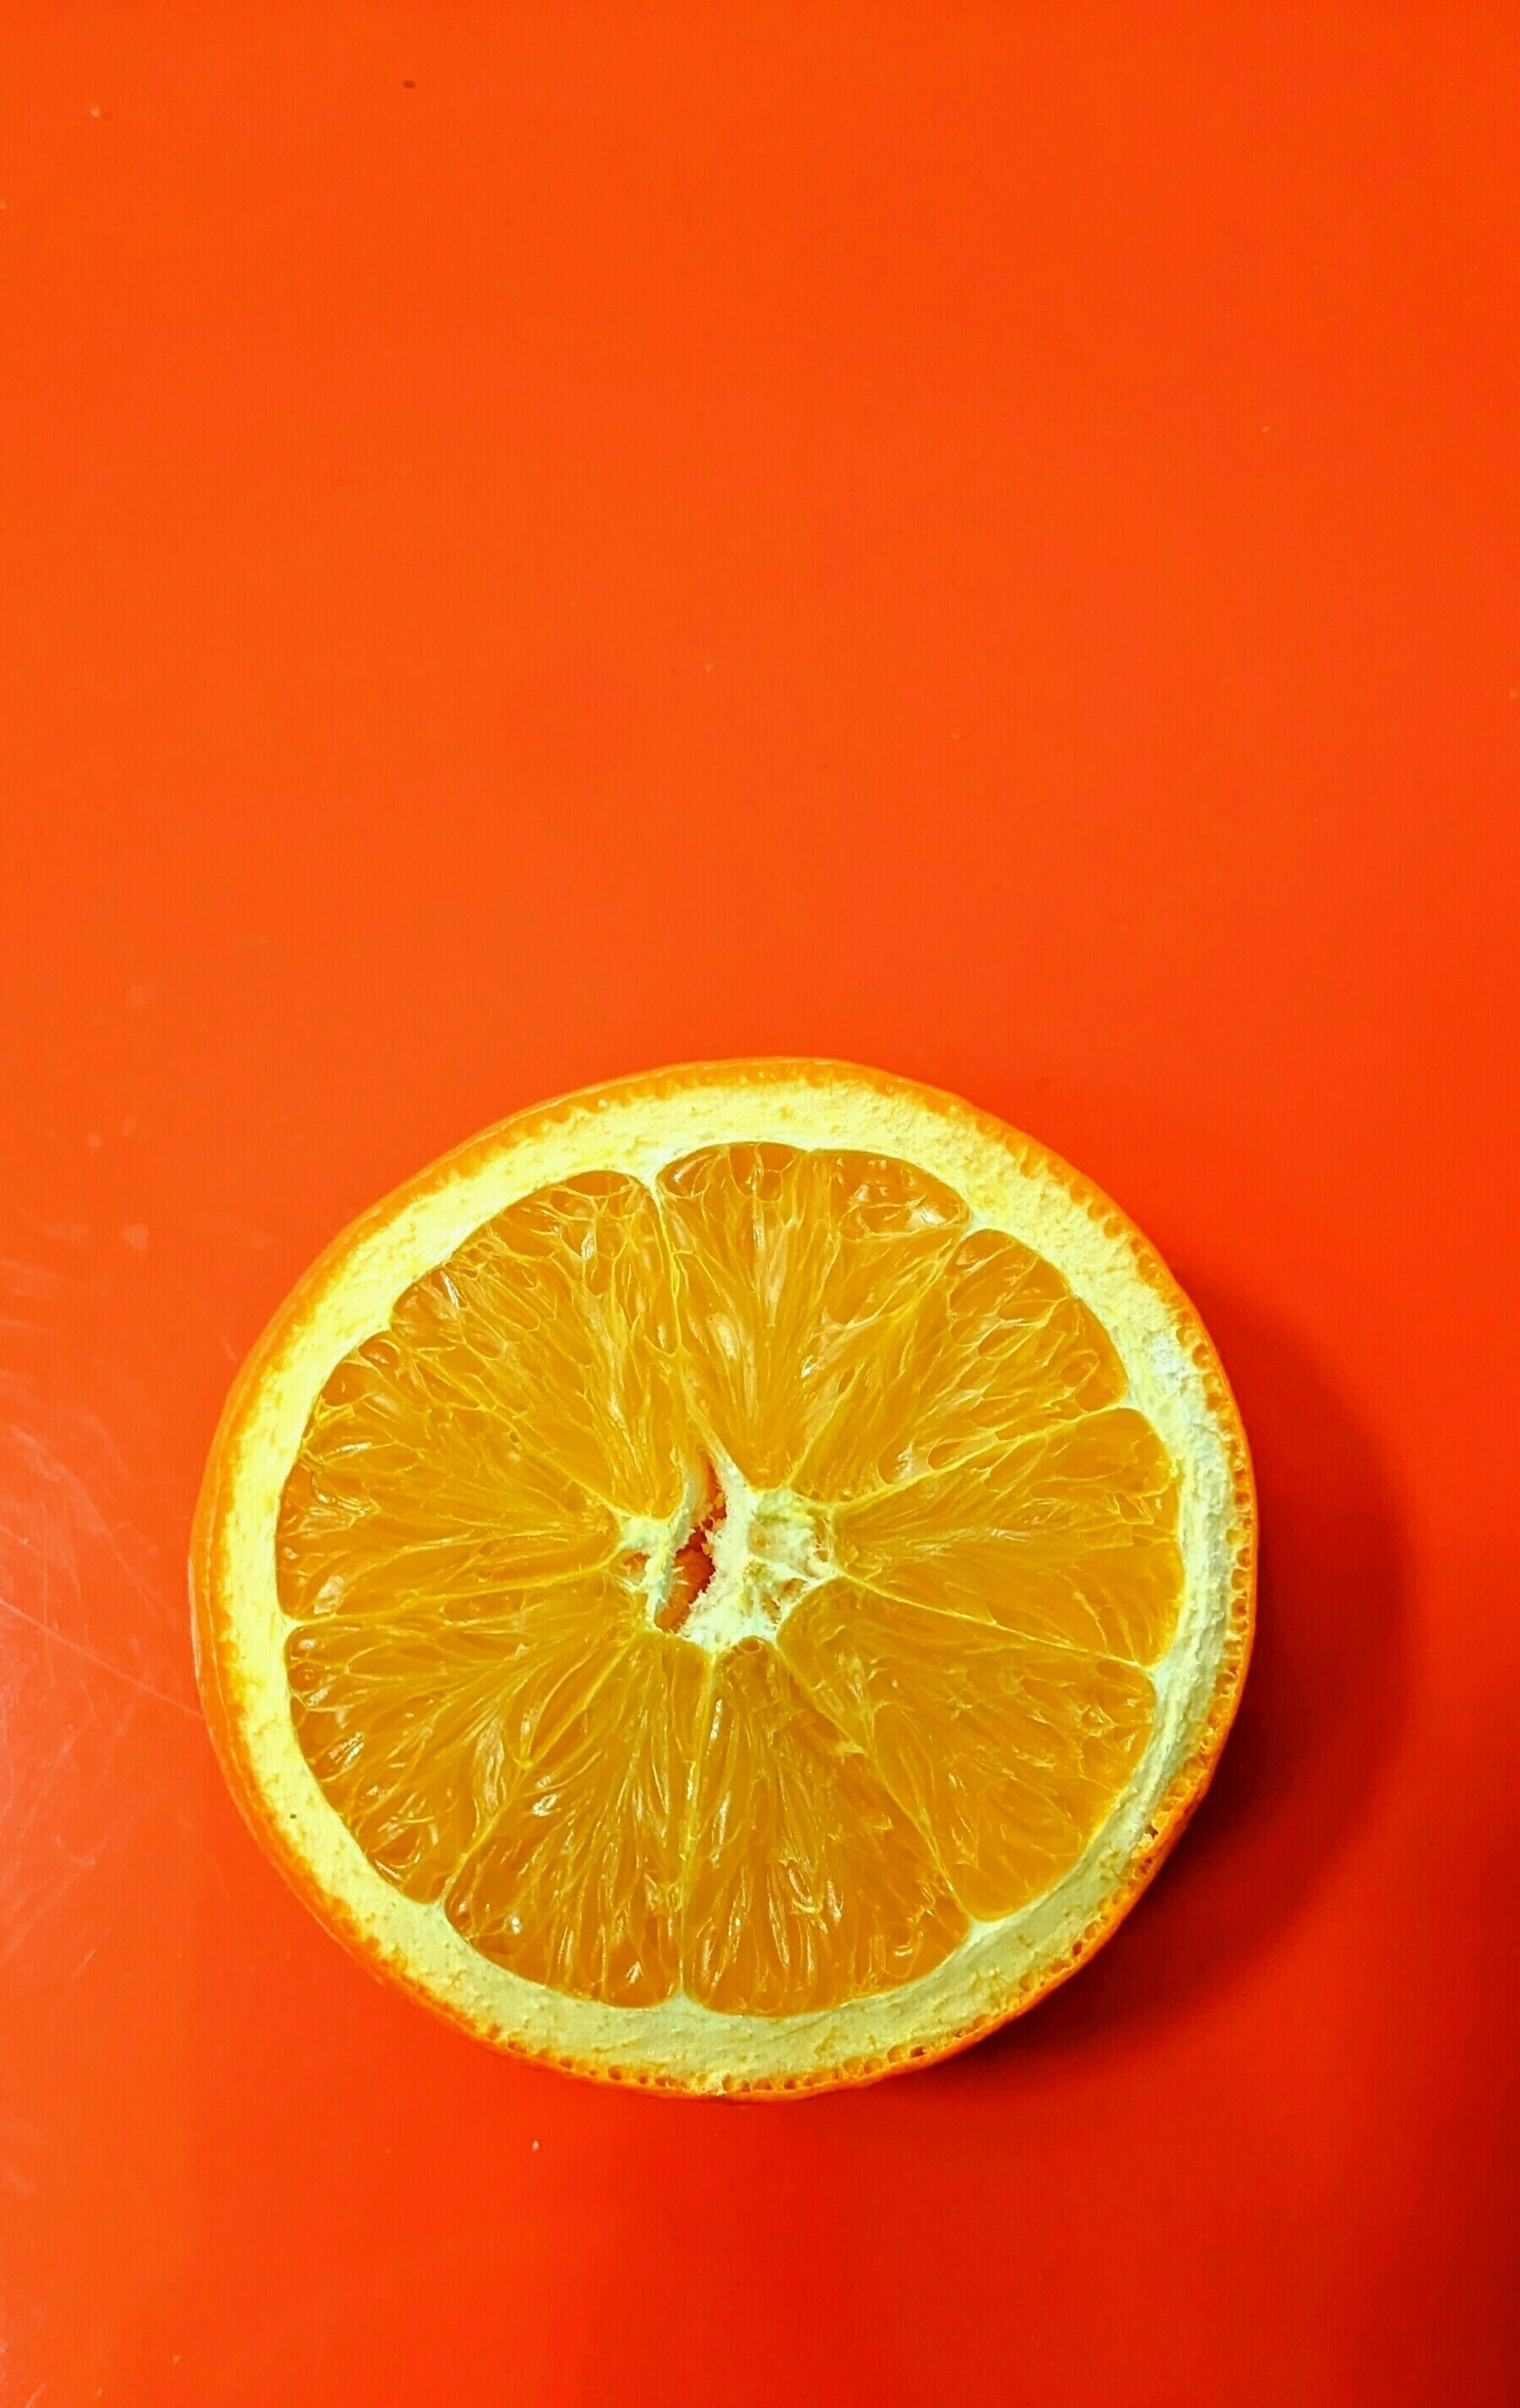 Orange slice on an orange tray